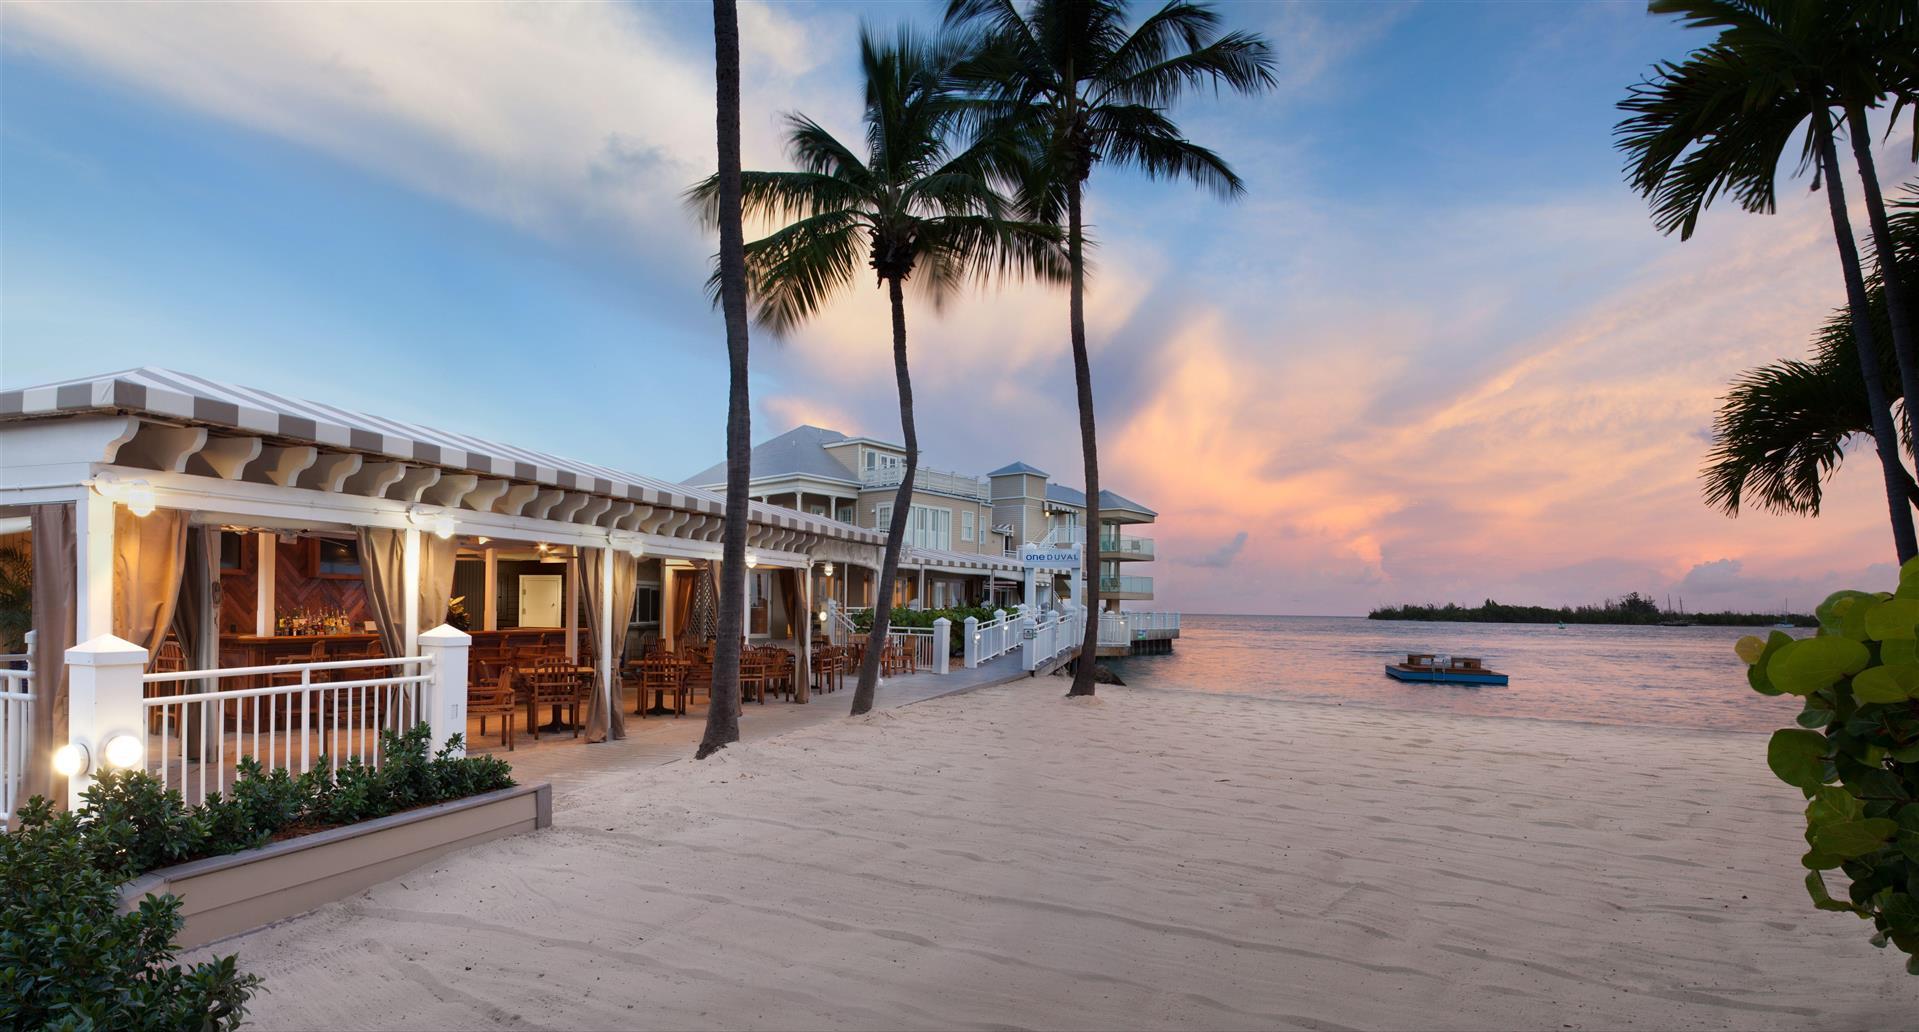 Pier House Resort & Spa in Key West, FL